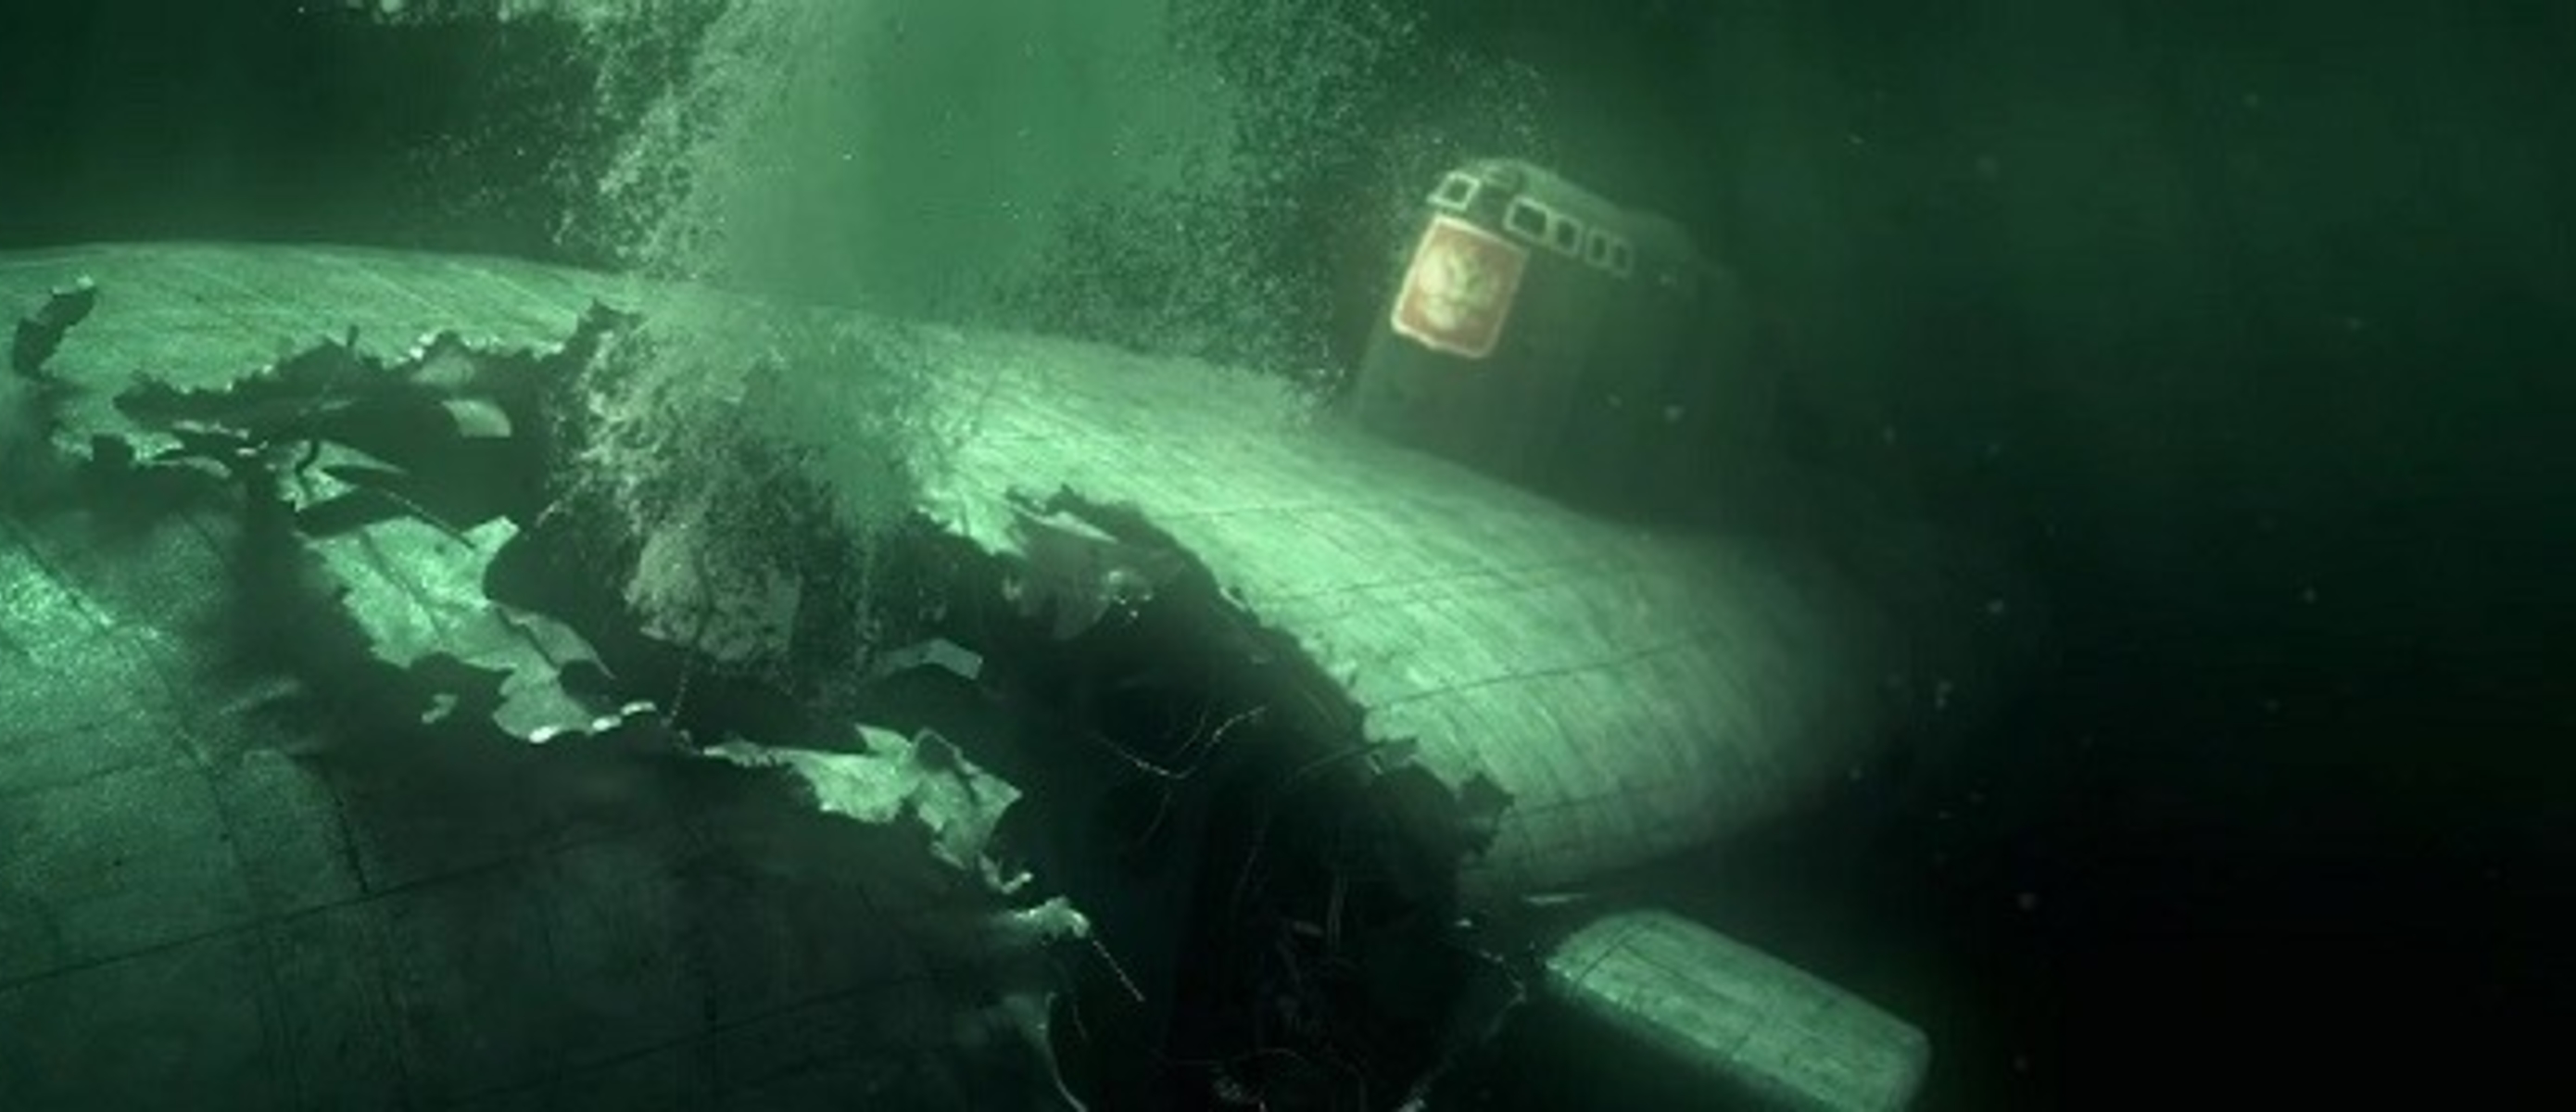 Курск под водой ванга. Подводная лодка к-141 «Курск». Курск подводная лодка катастрофа. Курск 141 атомная подводная лодка. К-141 «Курск».